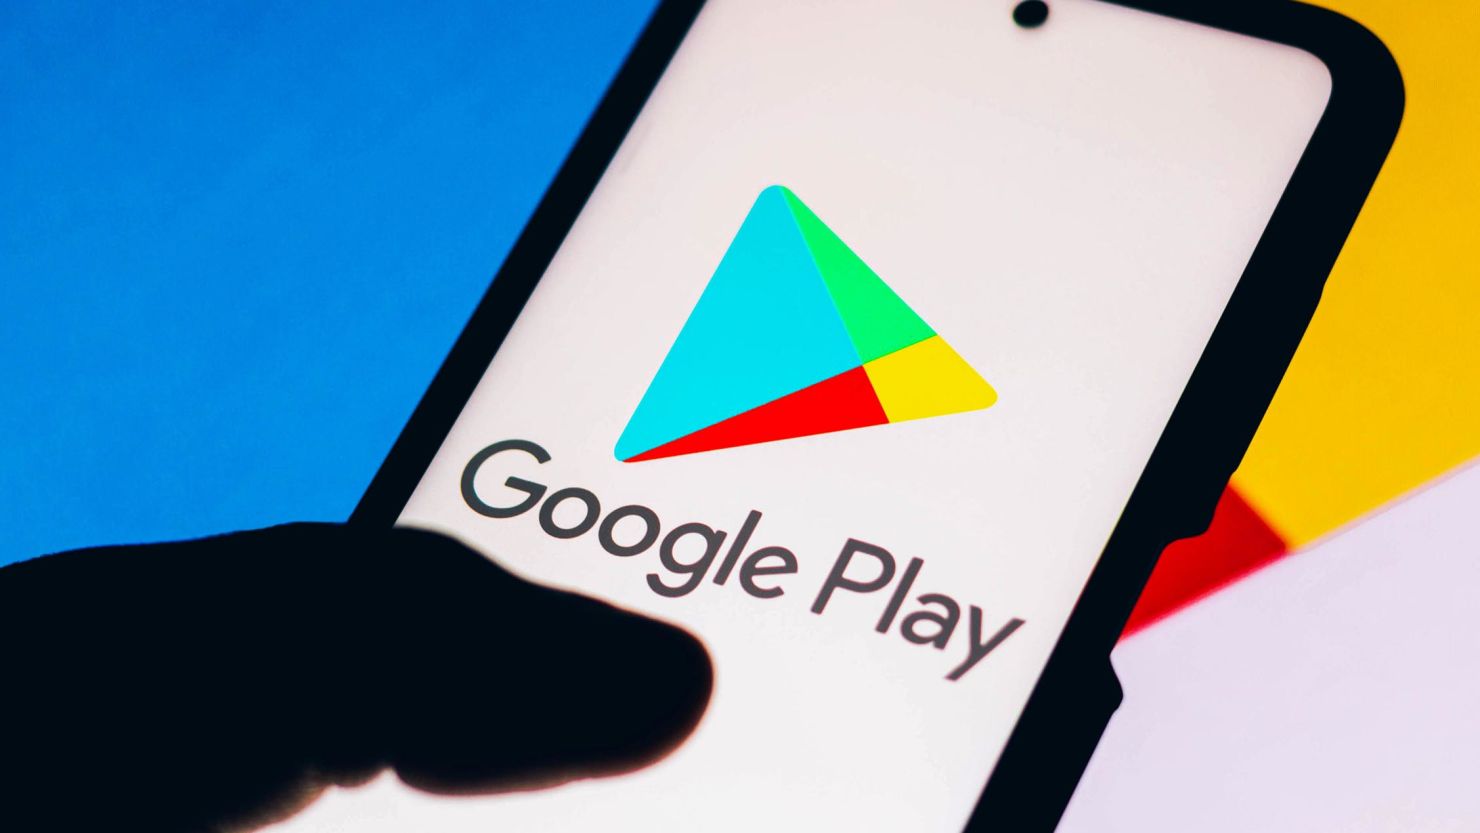 Google Play introduit une nouvelle fonctionnalité permettant d'identifier les applications officielles du gouvernement